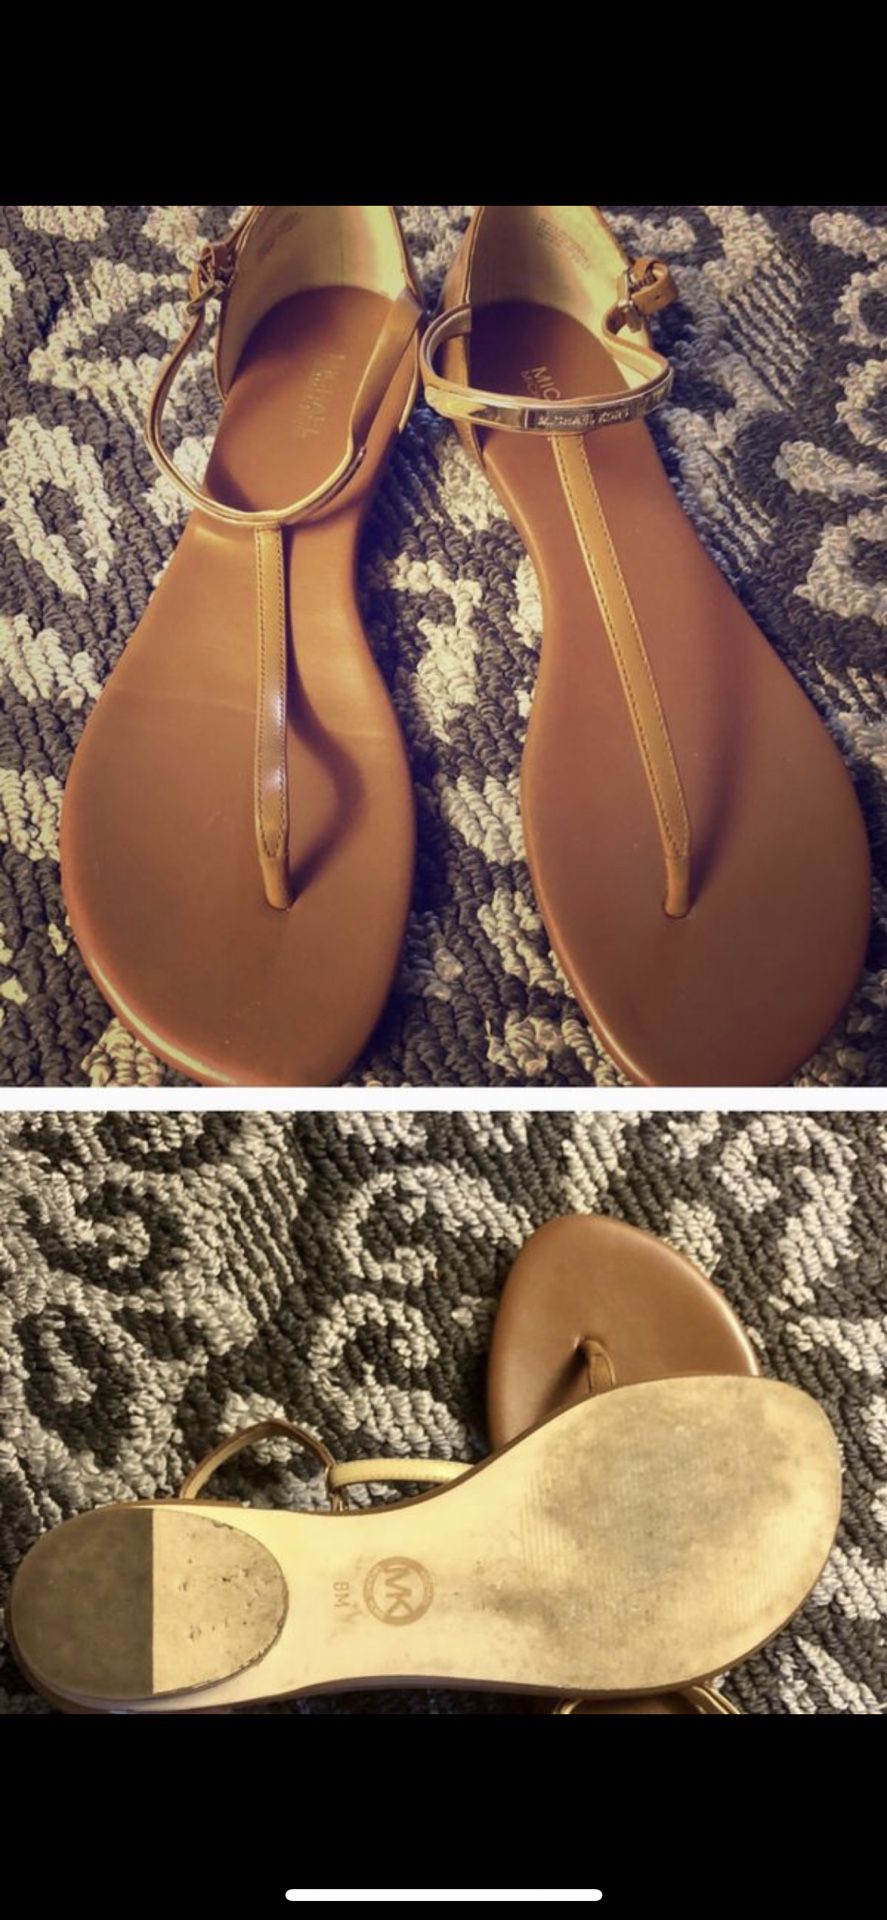 Michael Kors sandals size 8